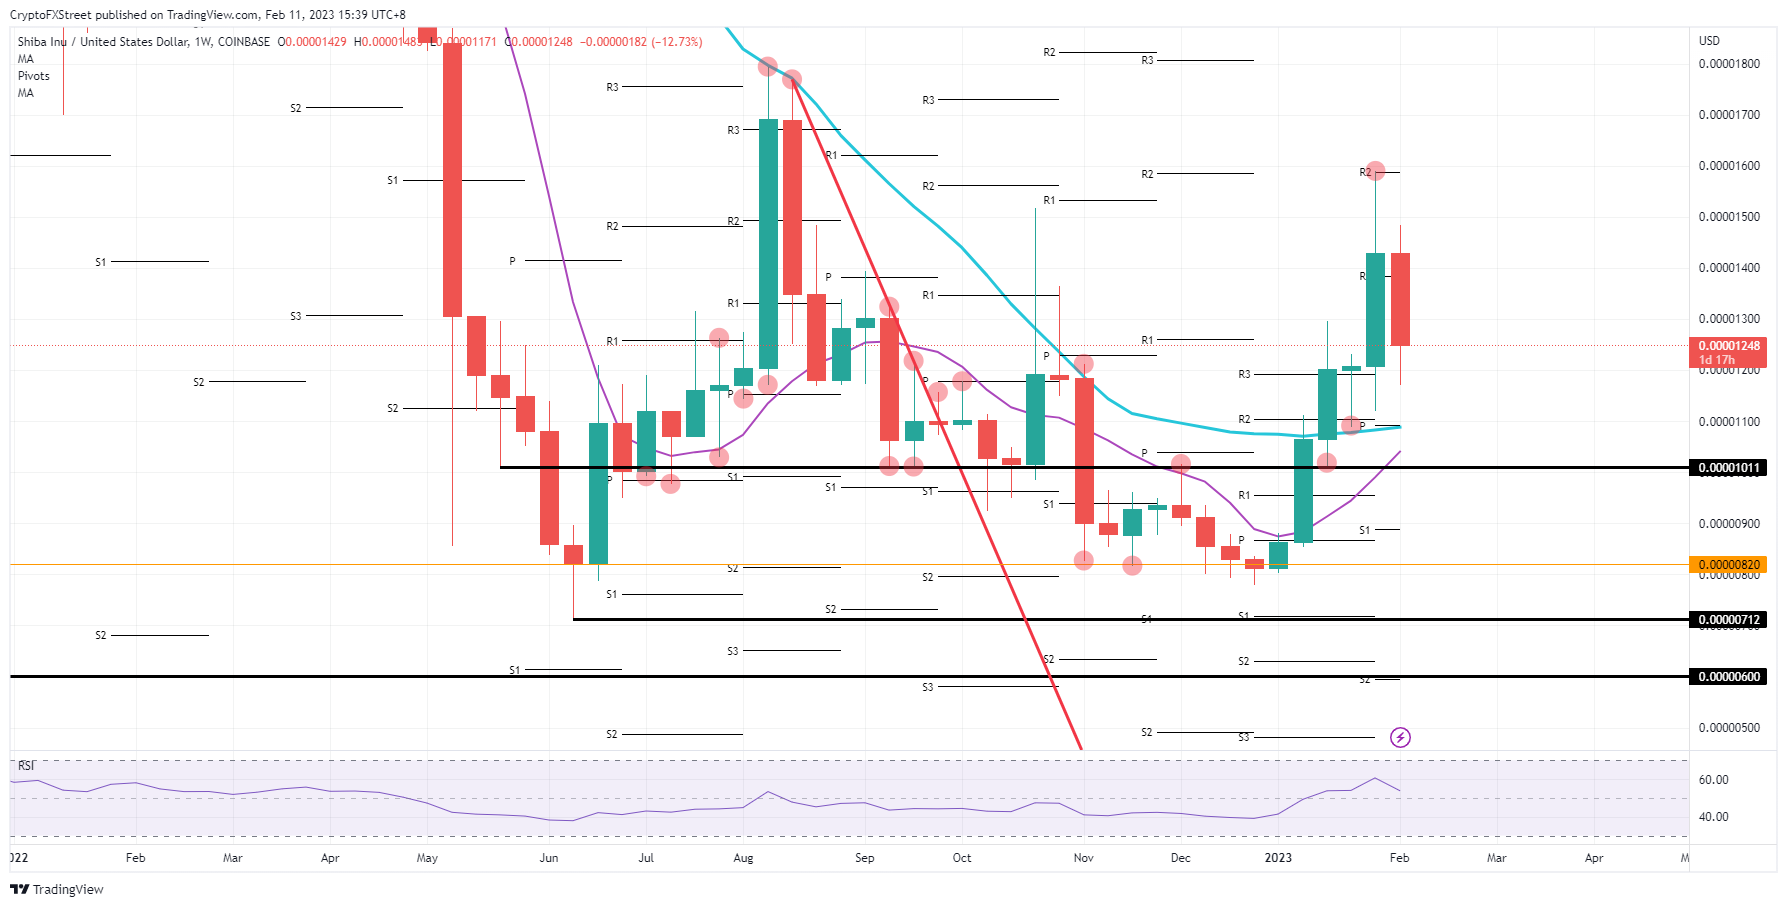 SHIB/USD weekly chart